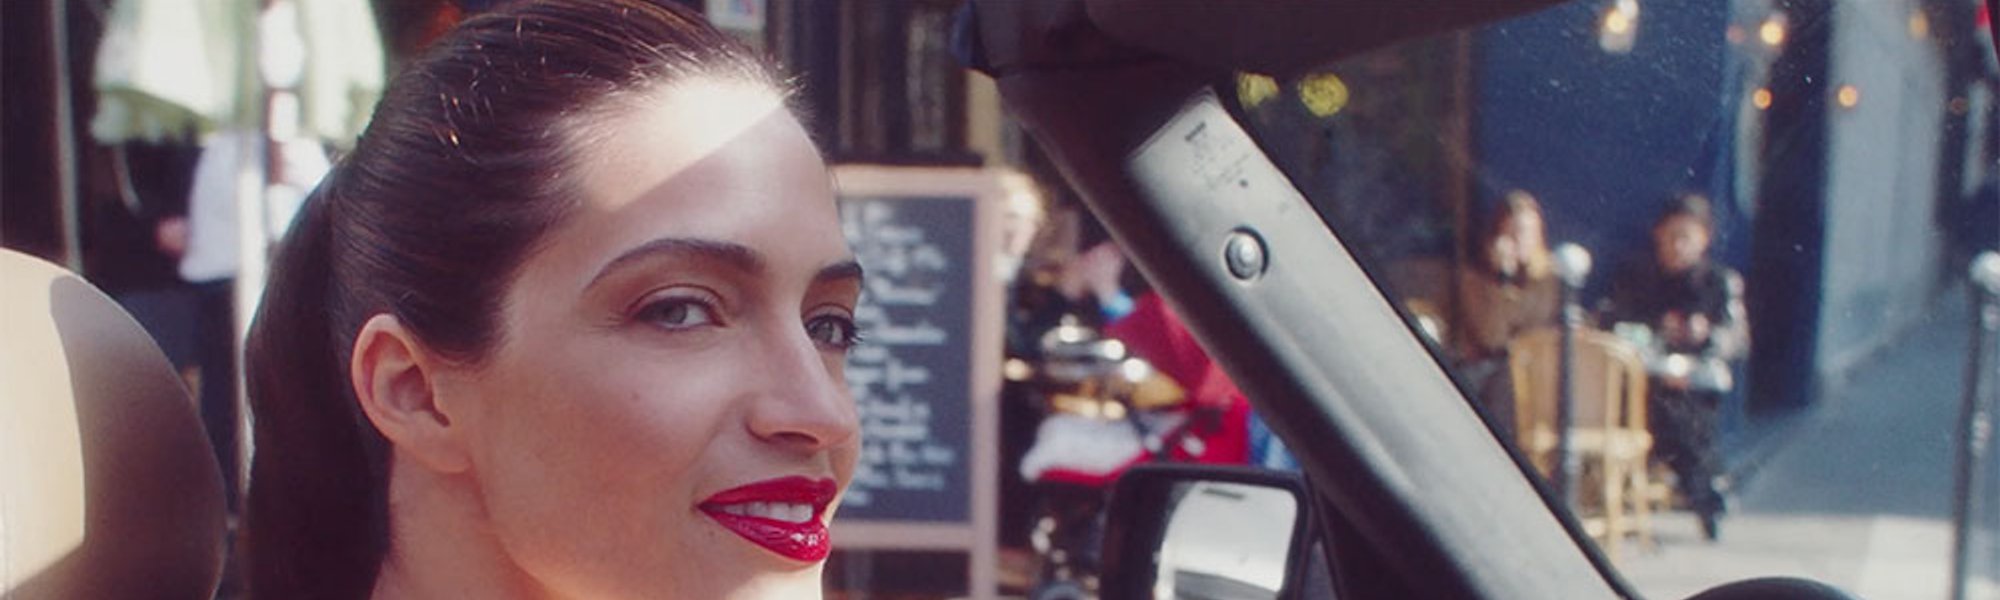 Sara Carbonero lleva unos labios perfectos gracias a Infalible 24H de L’Oréal Paris.